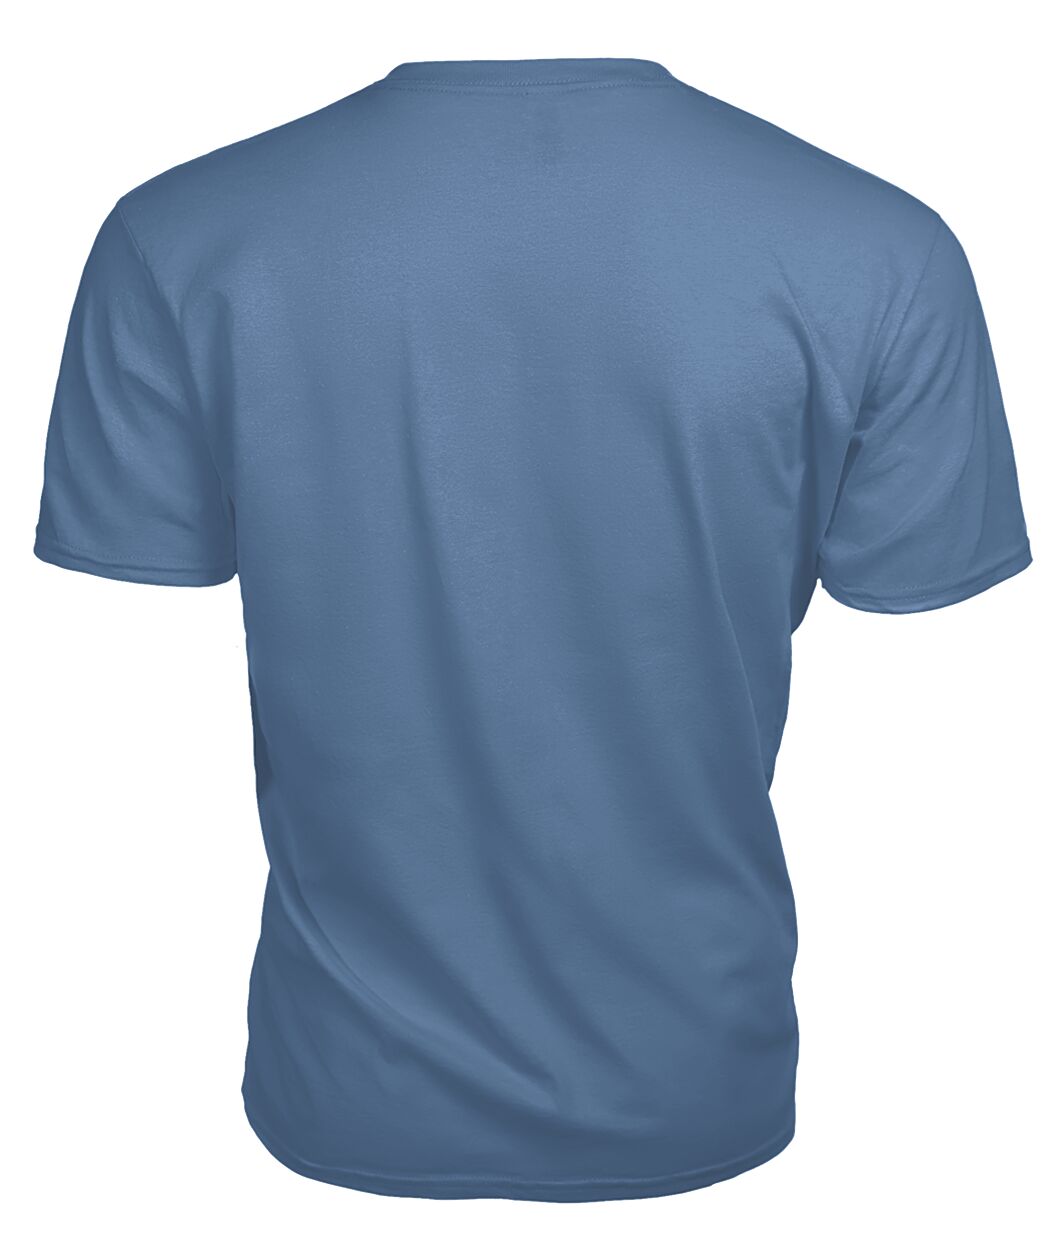 MacCulloch Family Tartan - 2D T-shirt